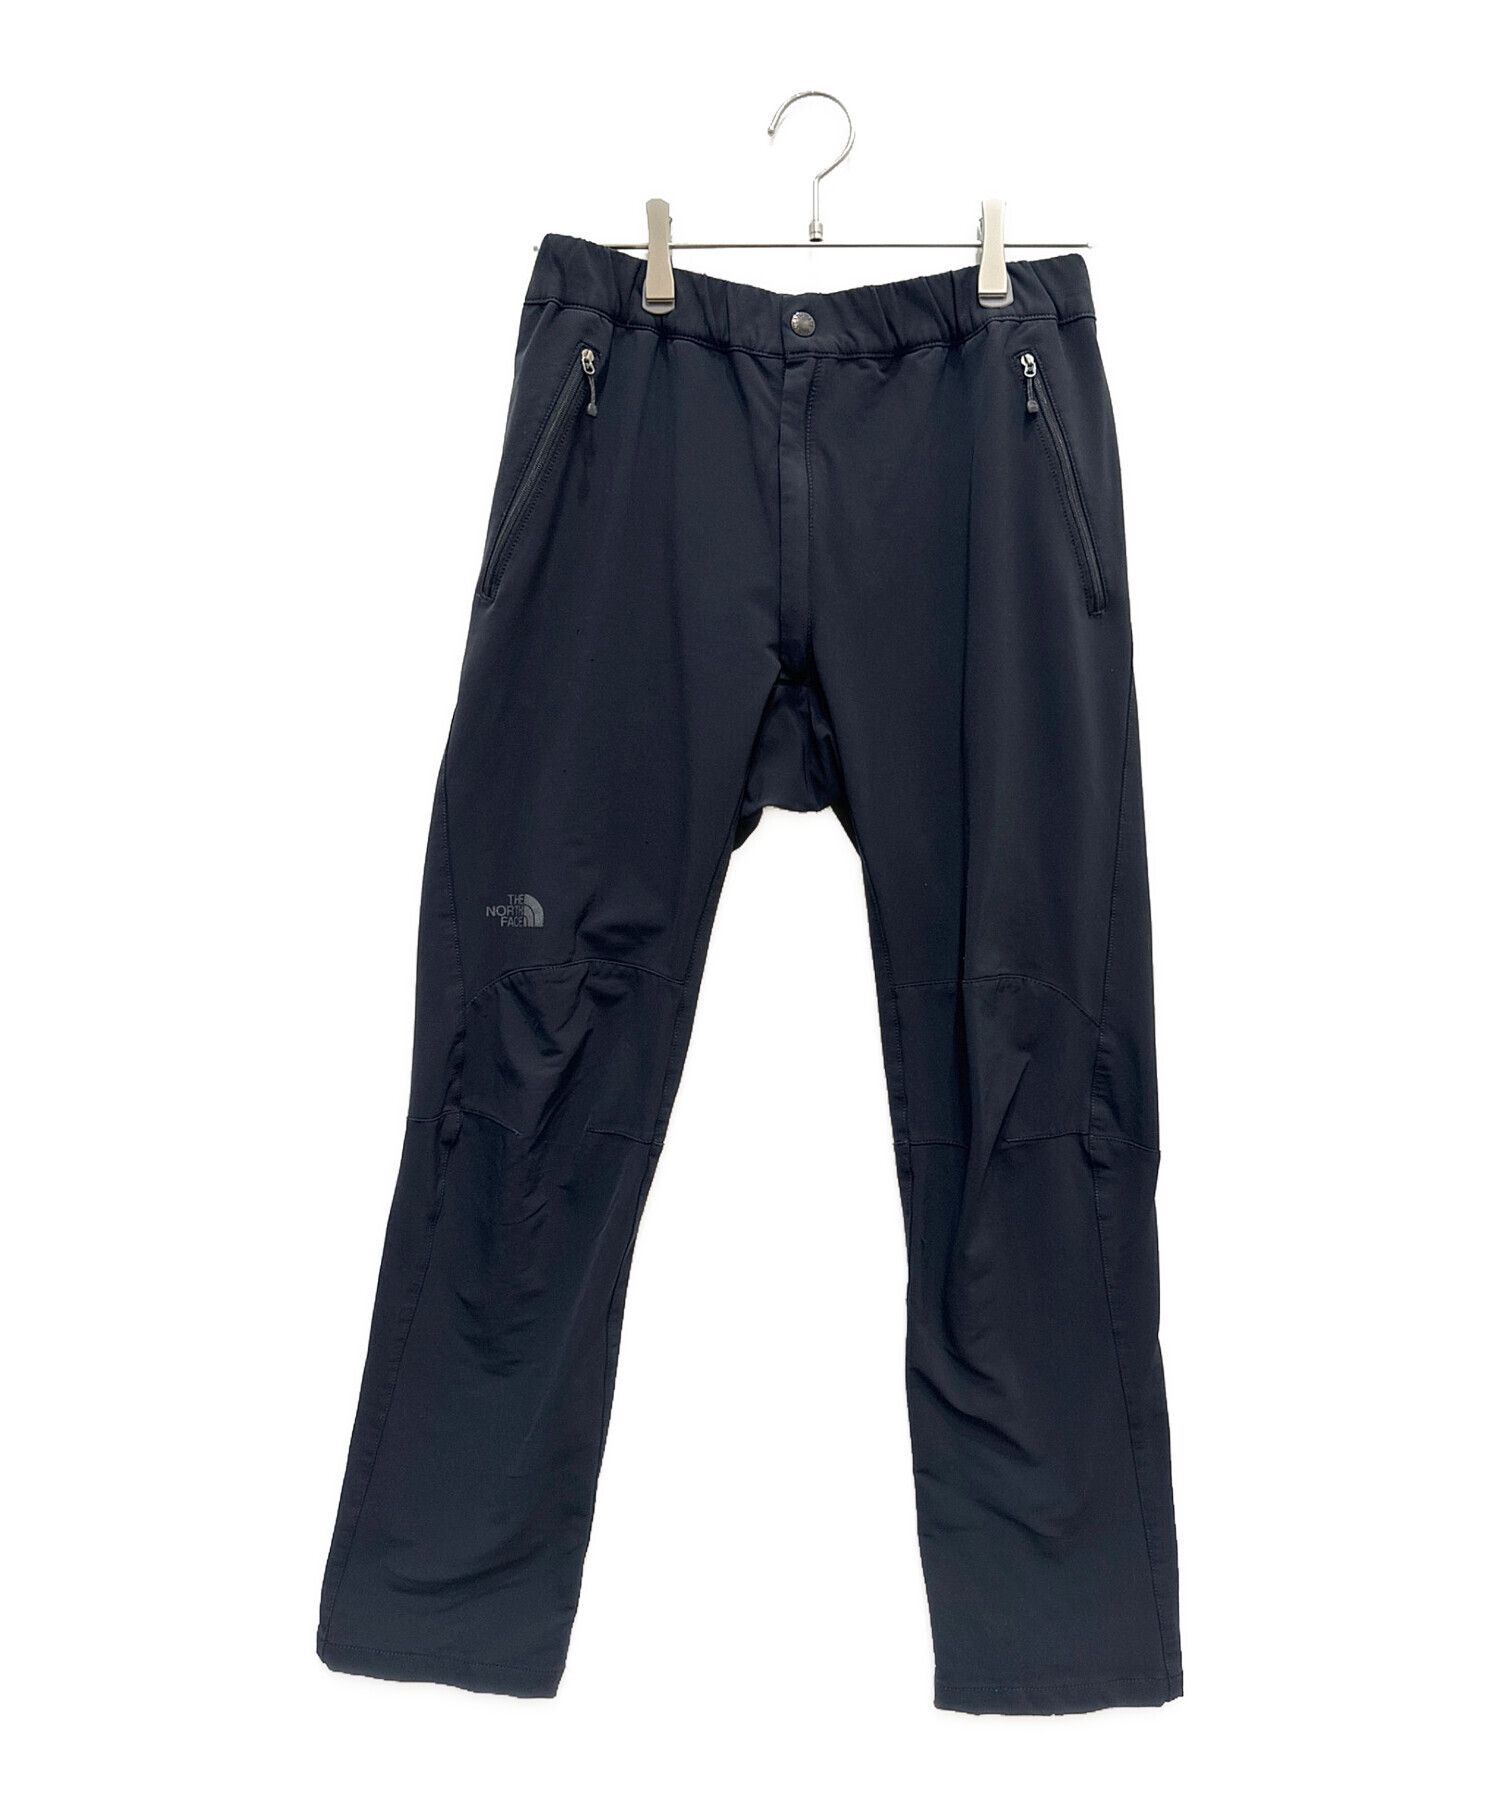 THE NORTH FACE (ザ ノース フェイス) Alpine Light pants/アルパインラインパンツ ブラック サイズ:S